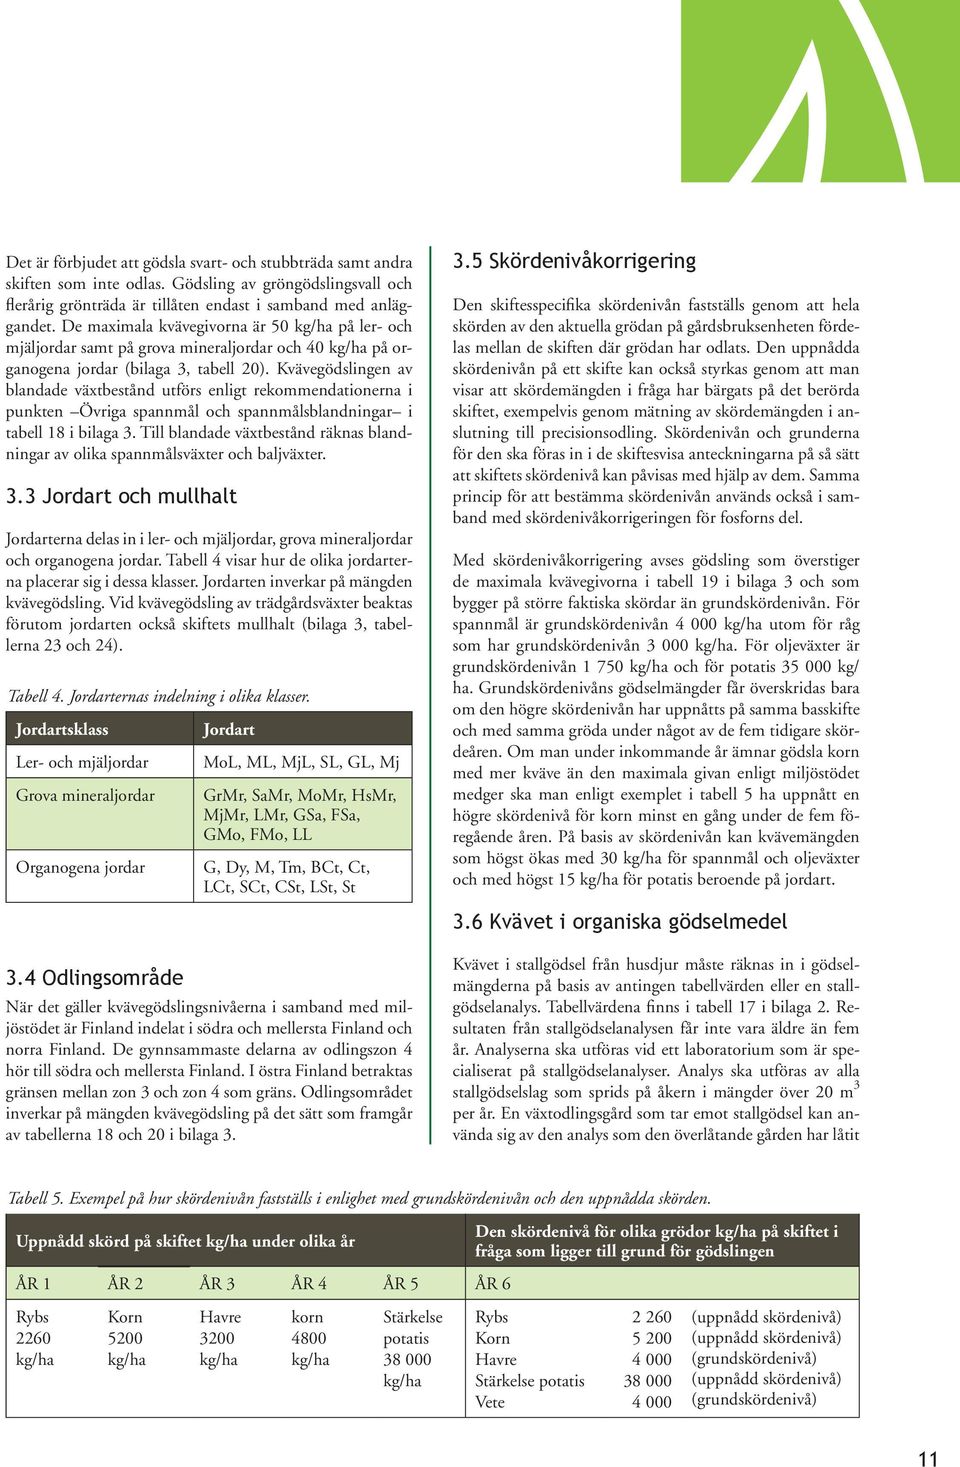 Kvävegödslingen av blandade växtbestånd utförs enligt rekommendationerna i punkten Övriga spannmål och spannmålsblandningar i tabell 18 i bilaga 3.